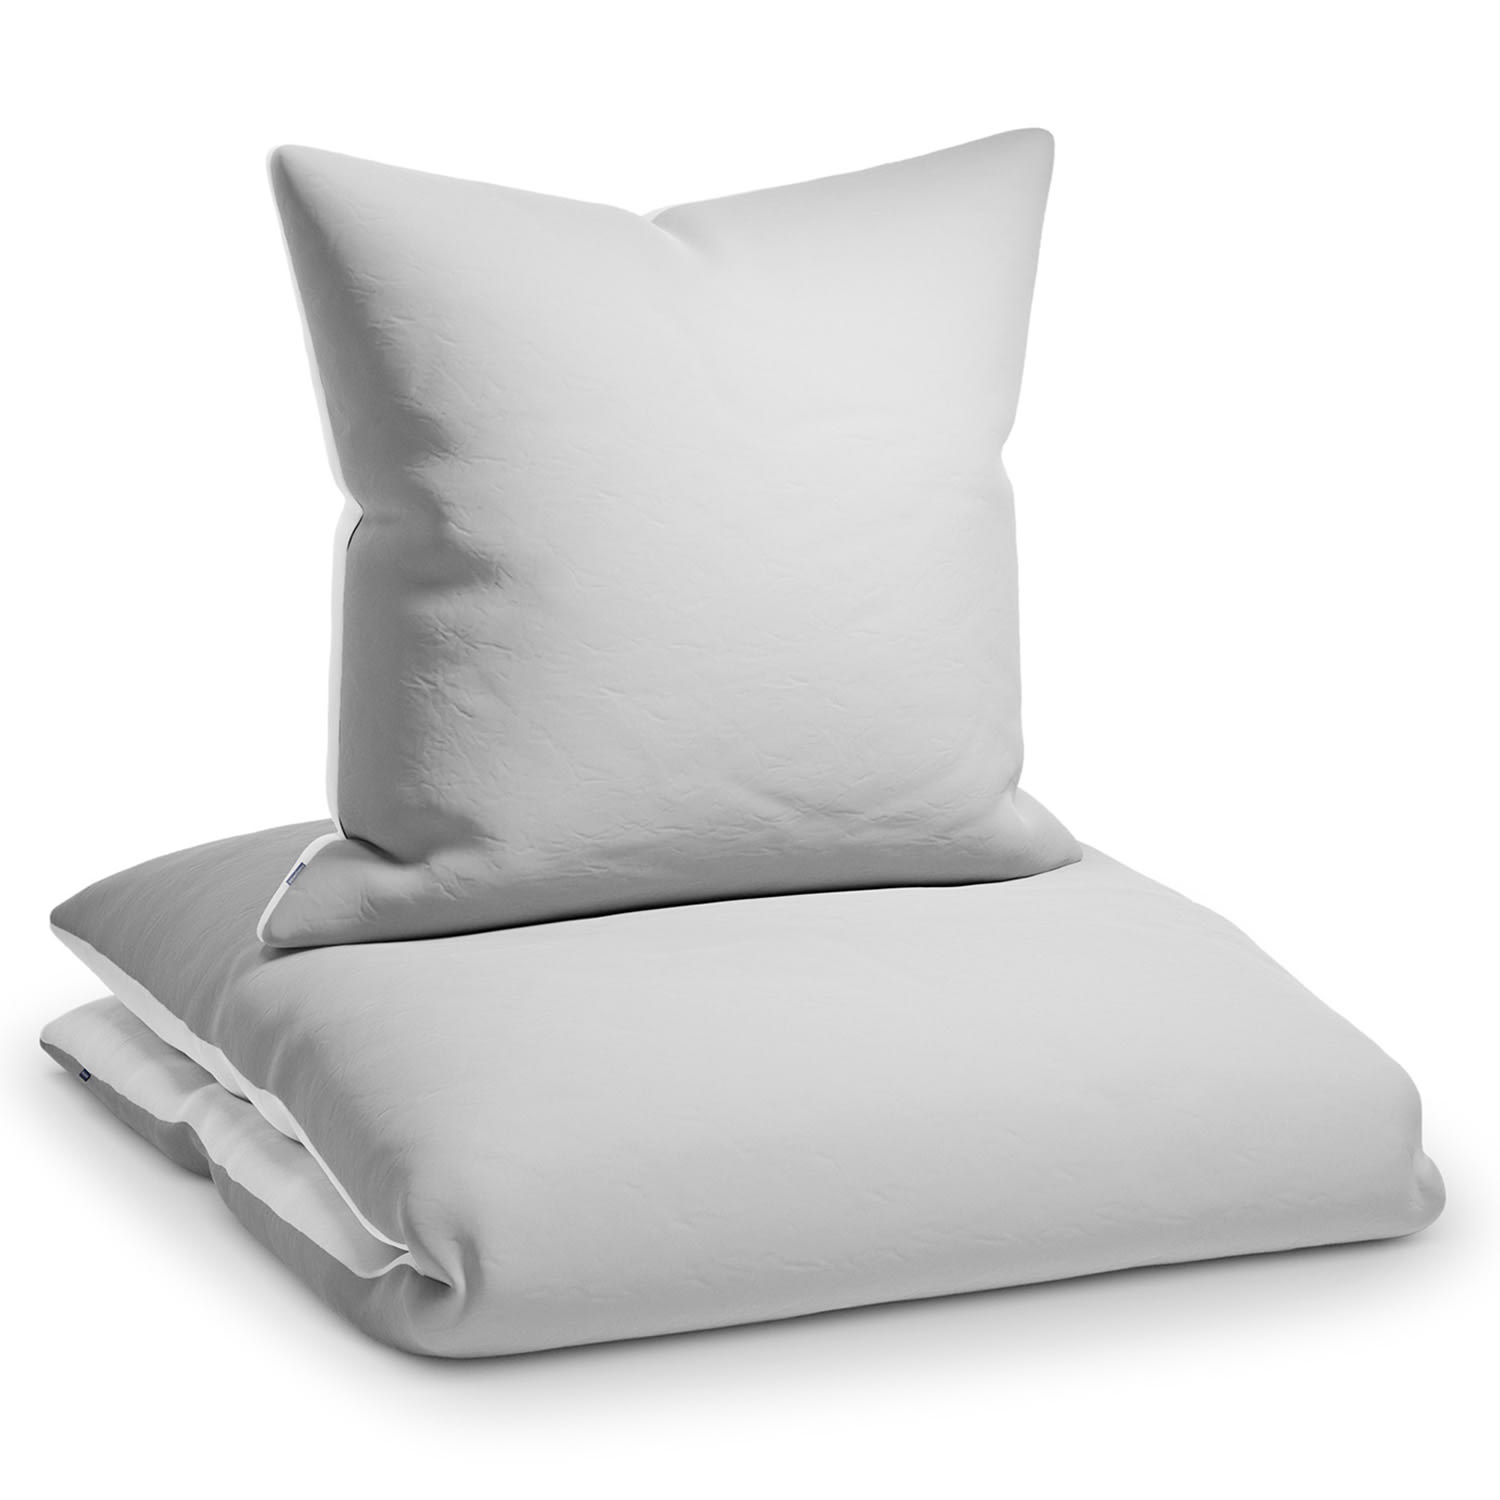 Povlečení Sleepwise Soft Wonder-Edition, 135 x 200 cm, světle šedé/bílé